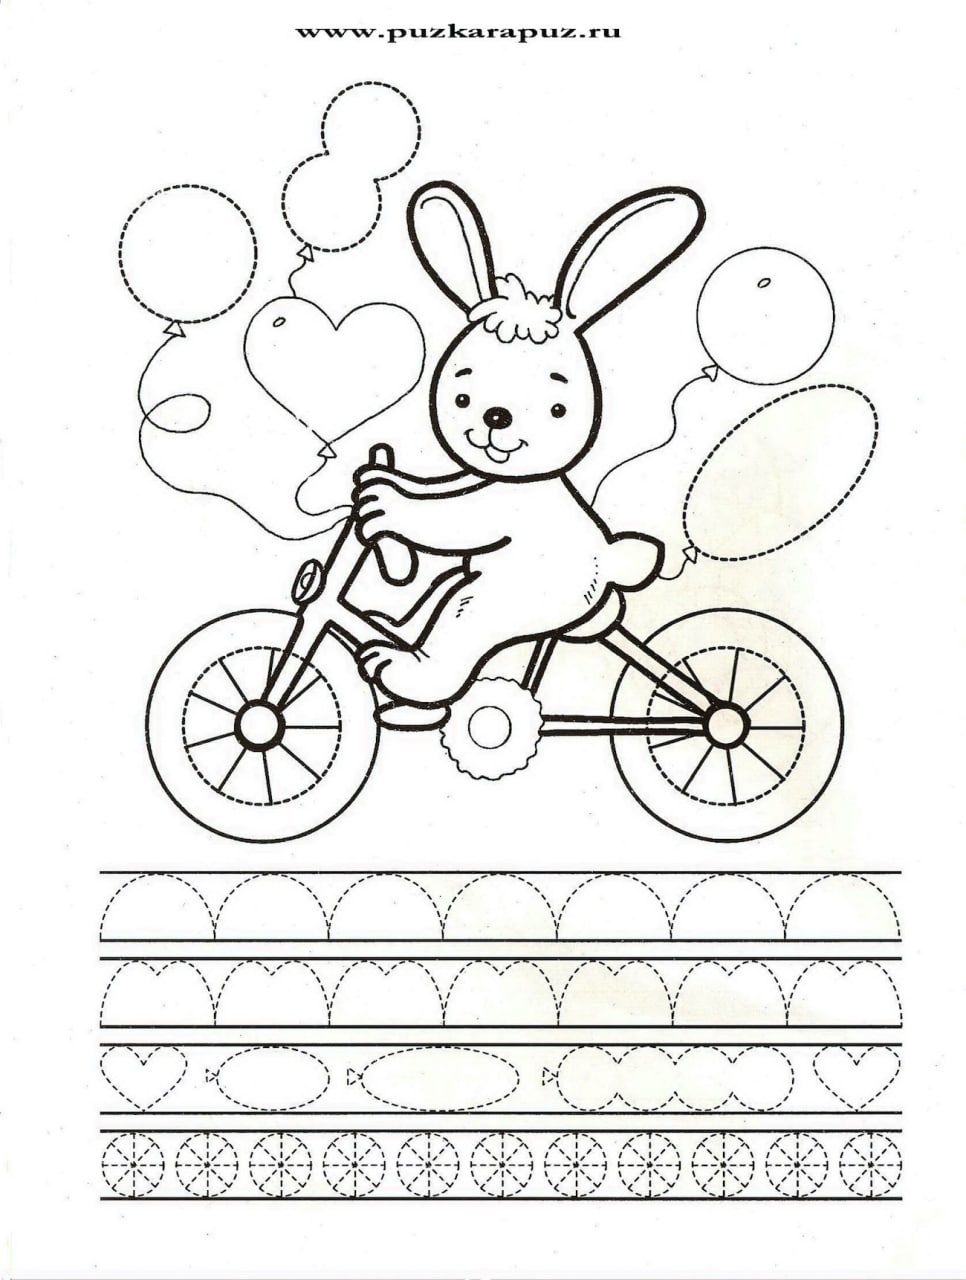 Велосипед задания для дошкольников